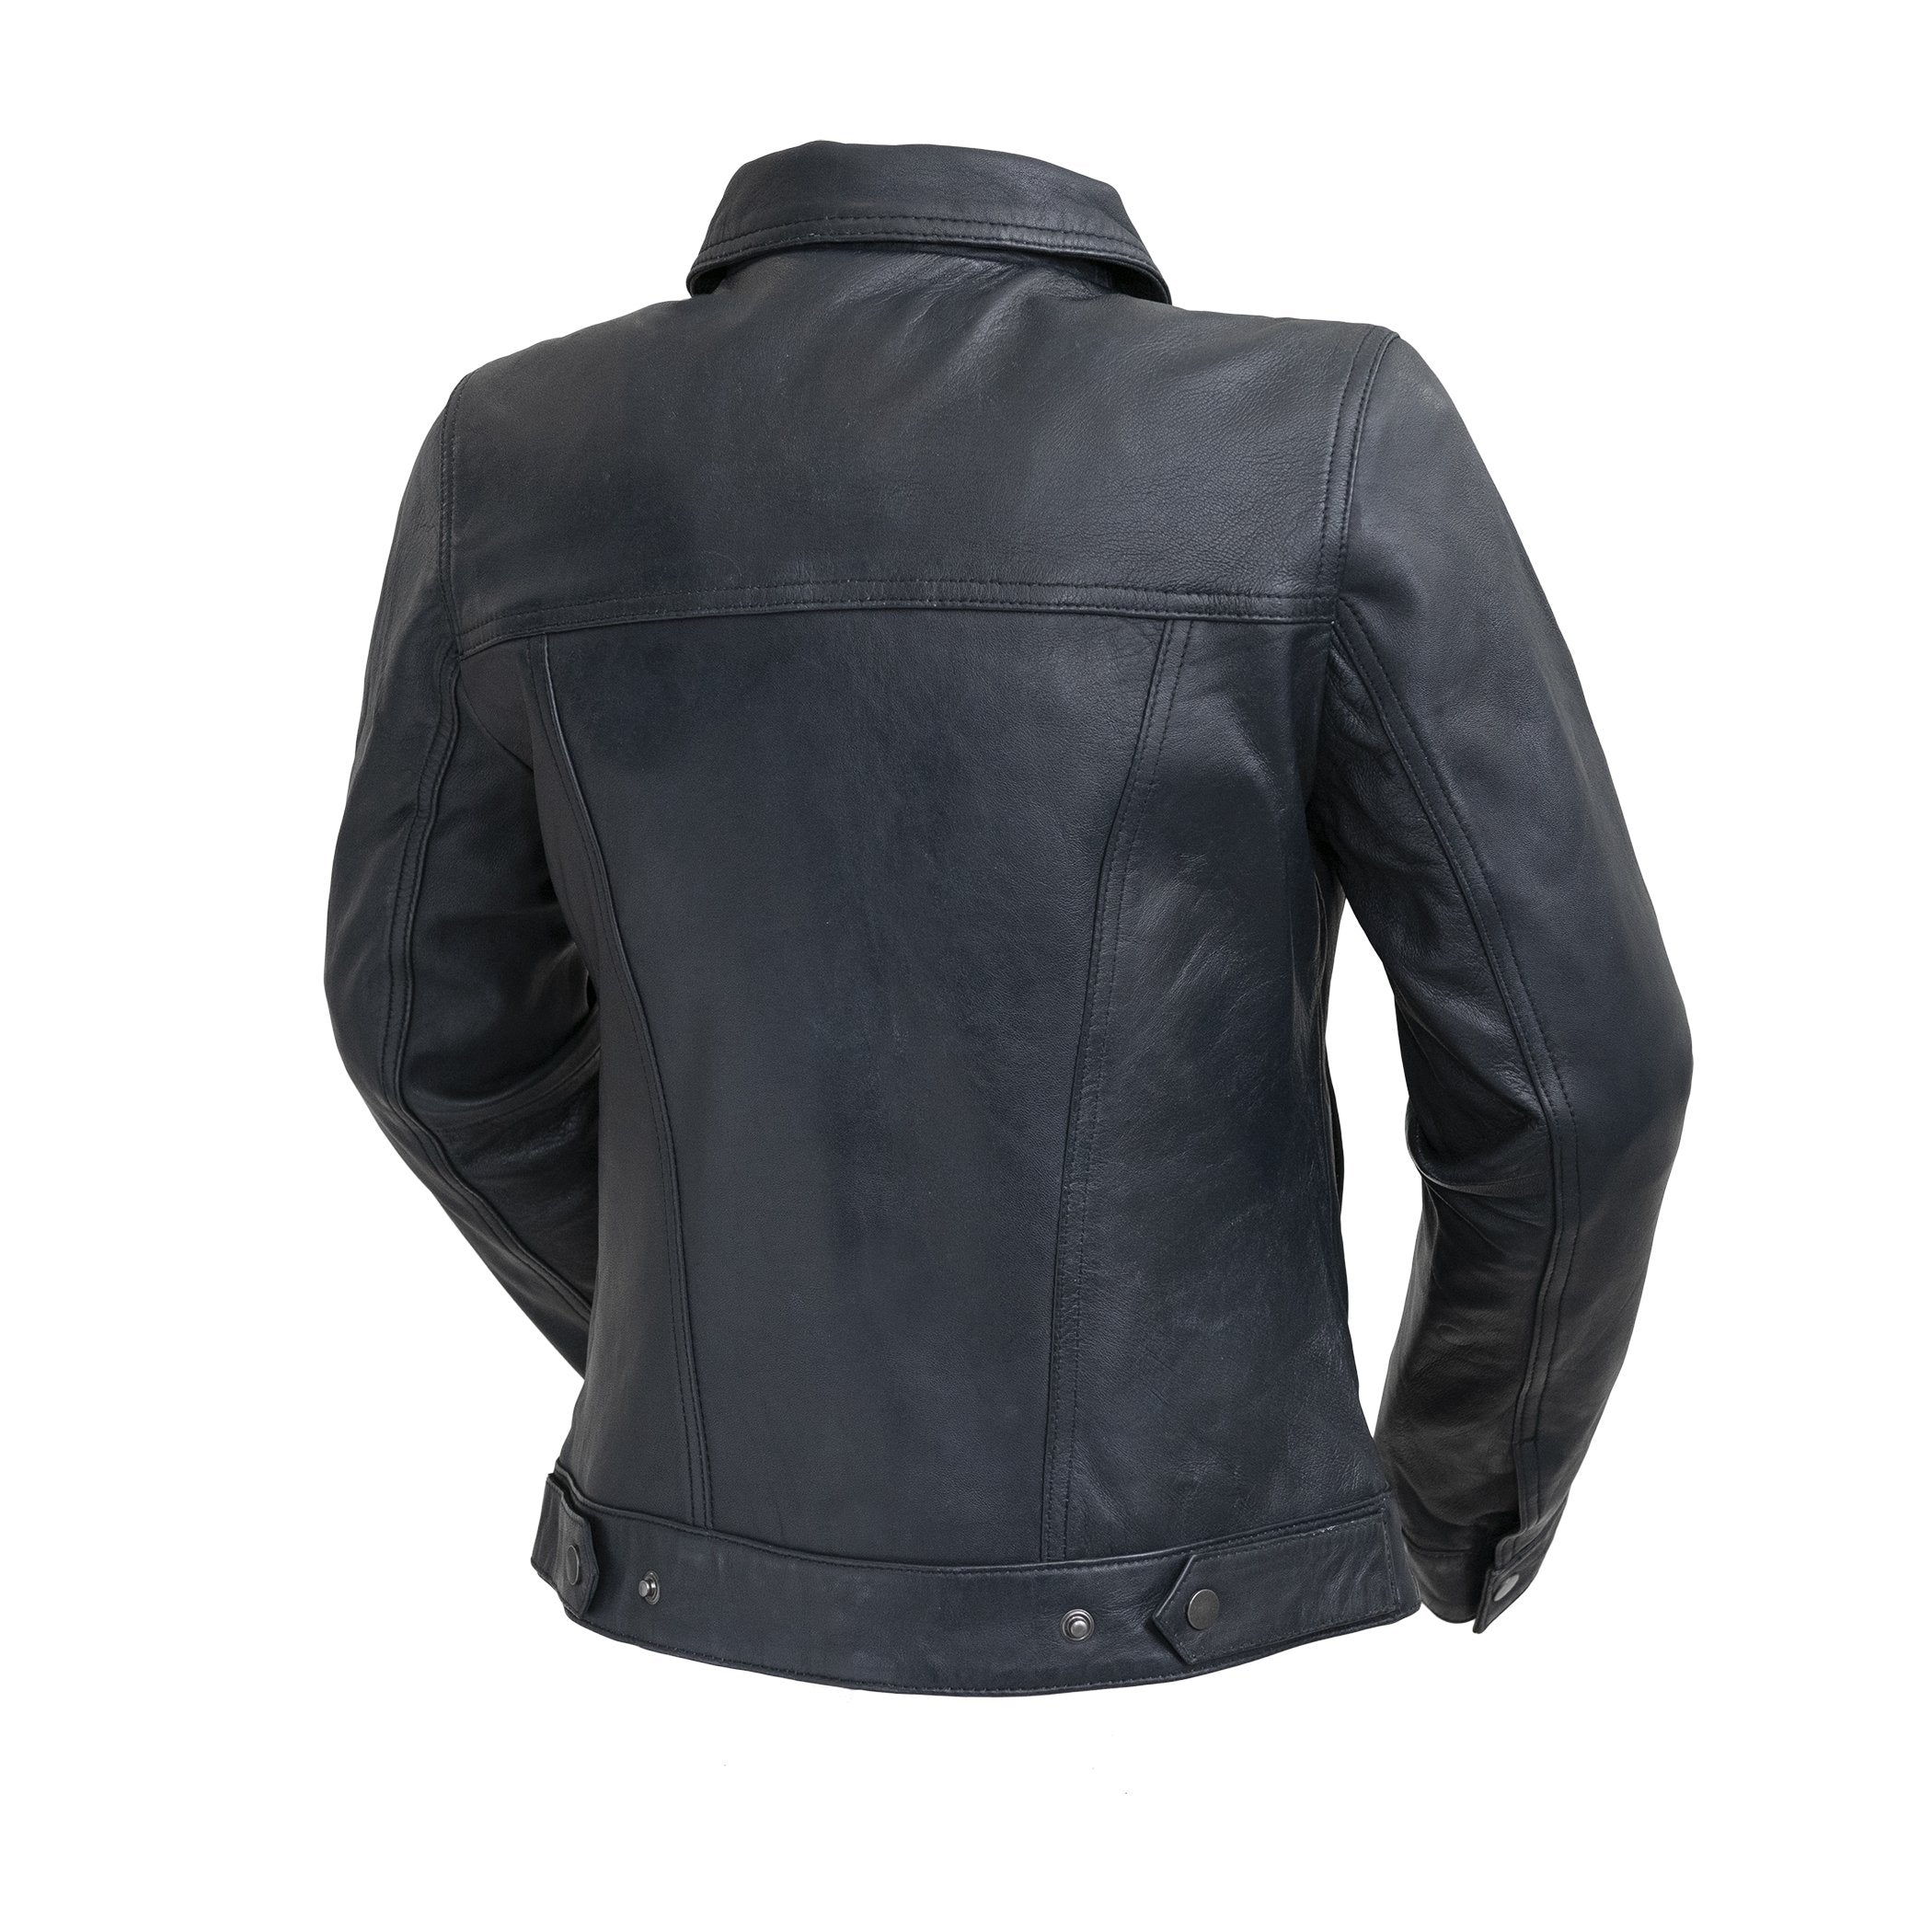 Madison - Women's Fashion Leather Jacket Jacket Best Leather Ny   